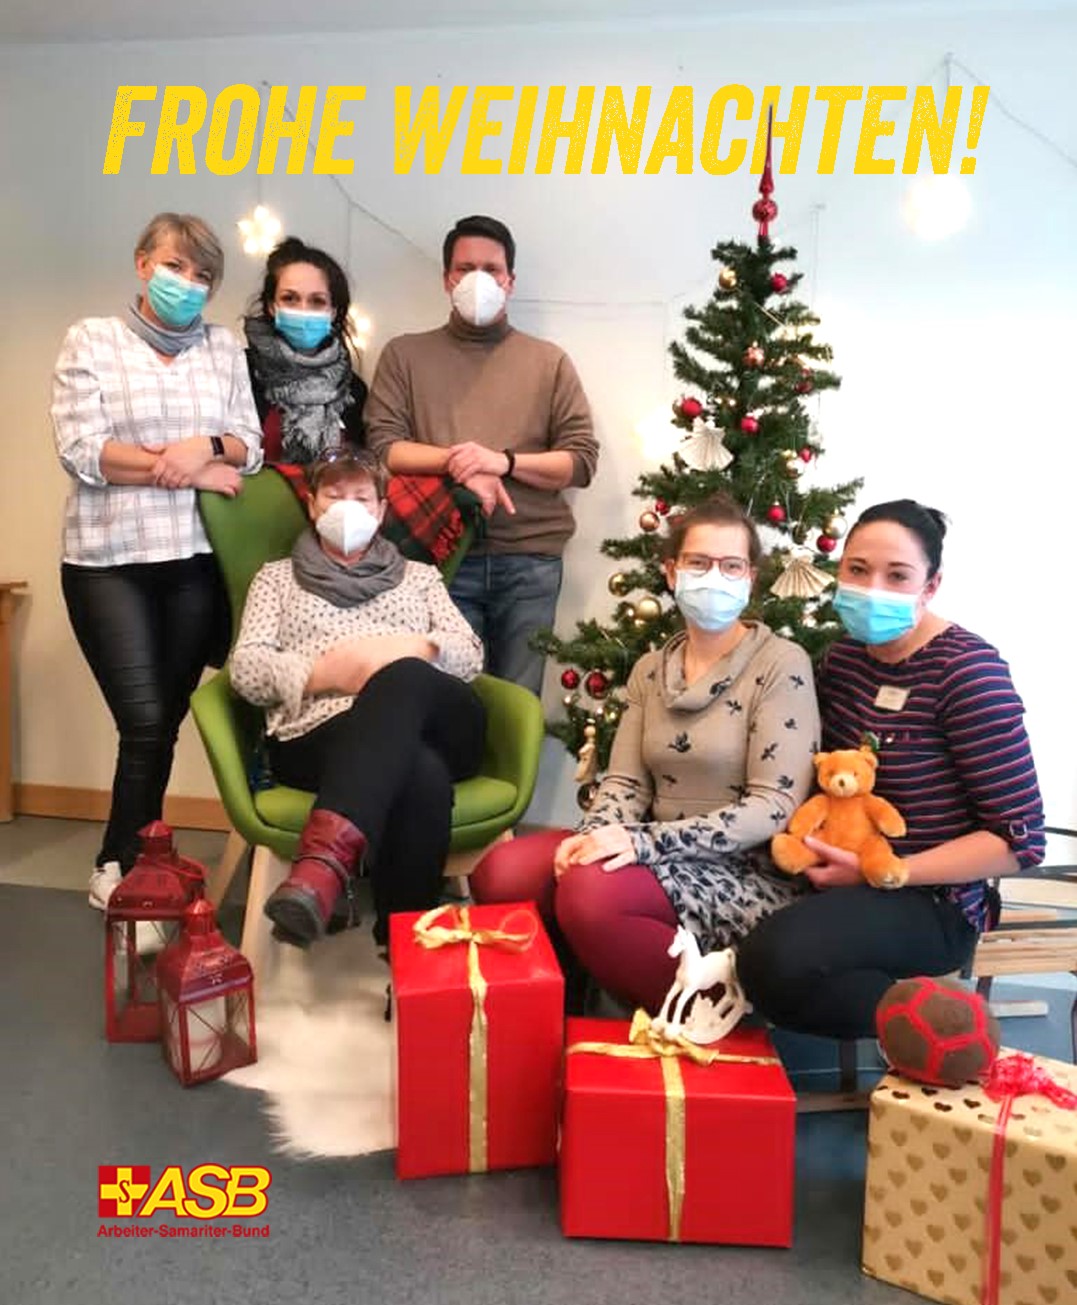 Das Team Weinberg wünscht Frohe Weihnachten